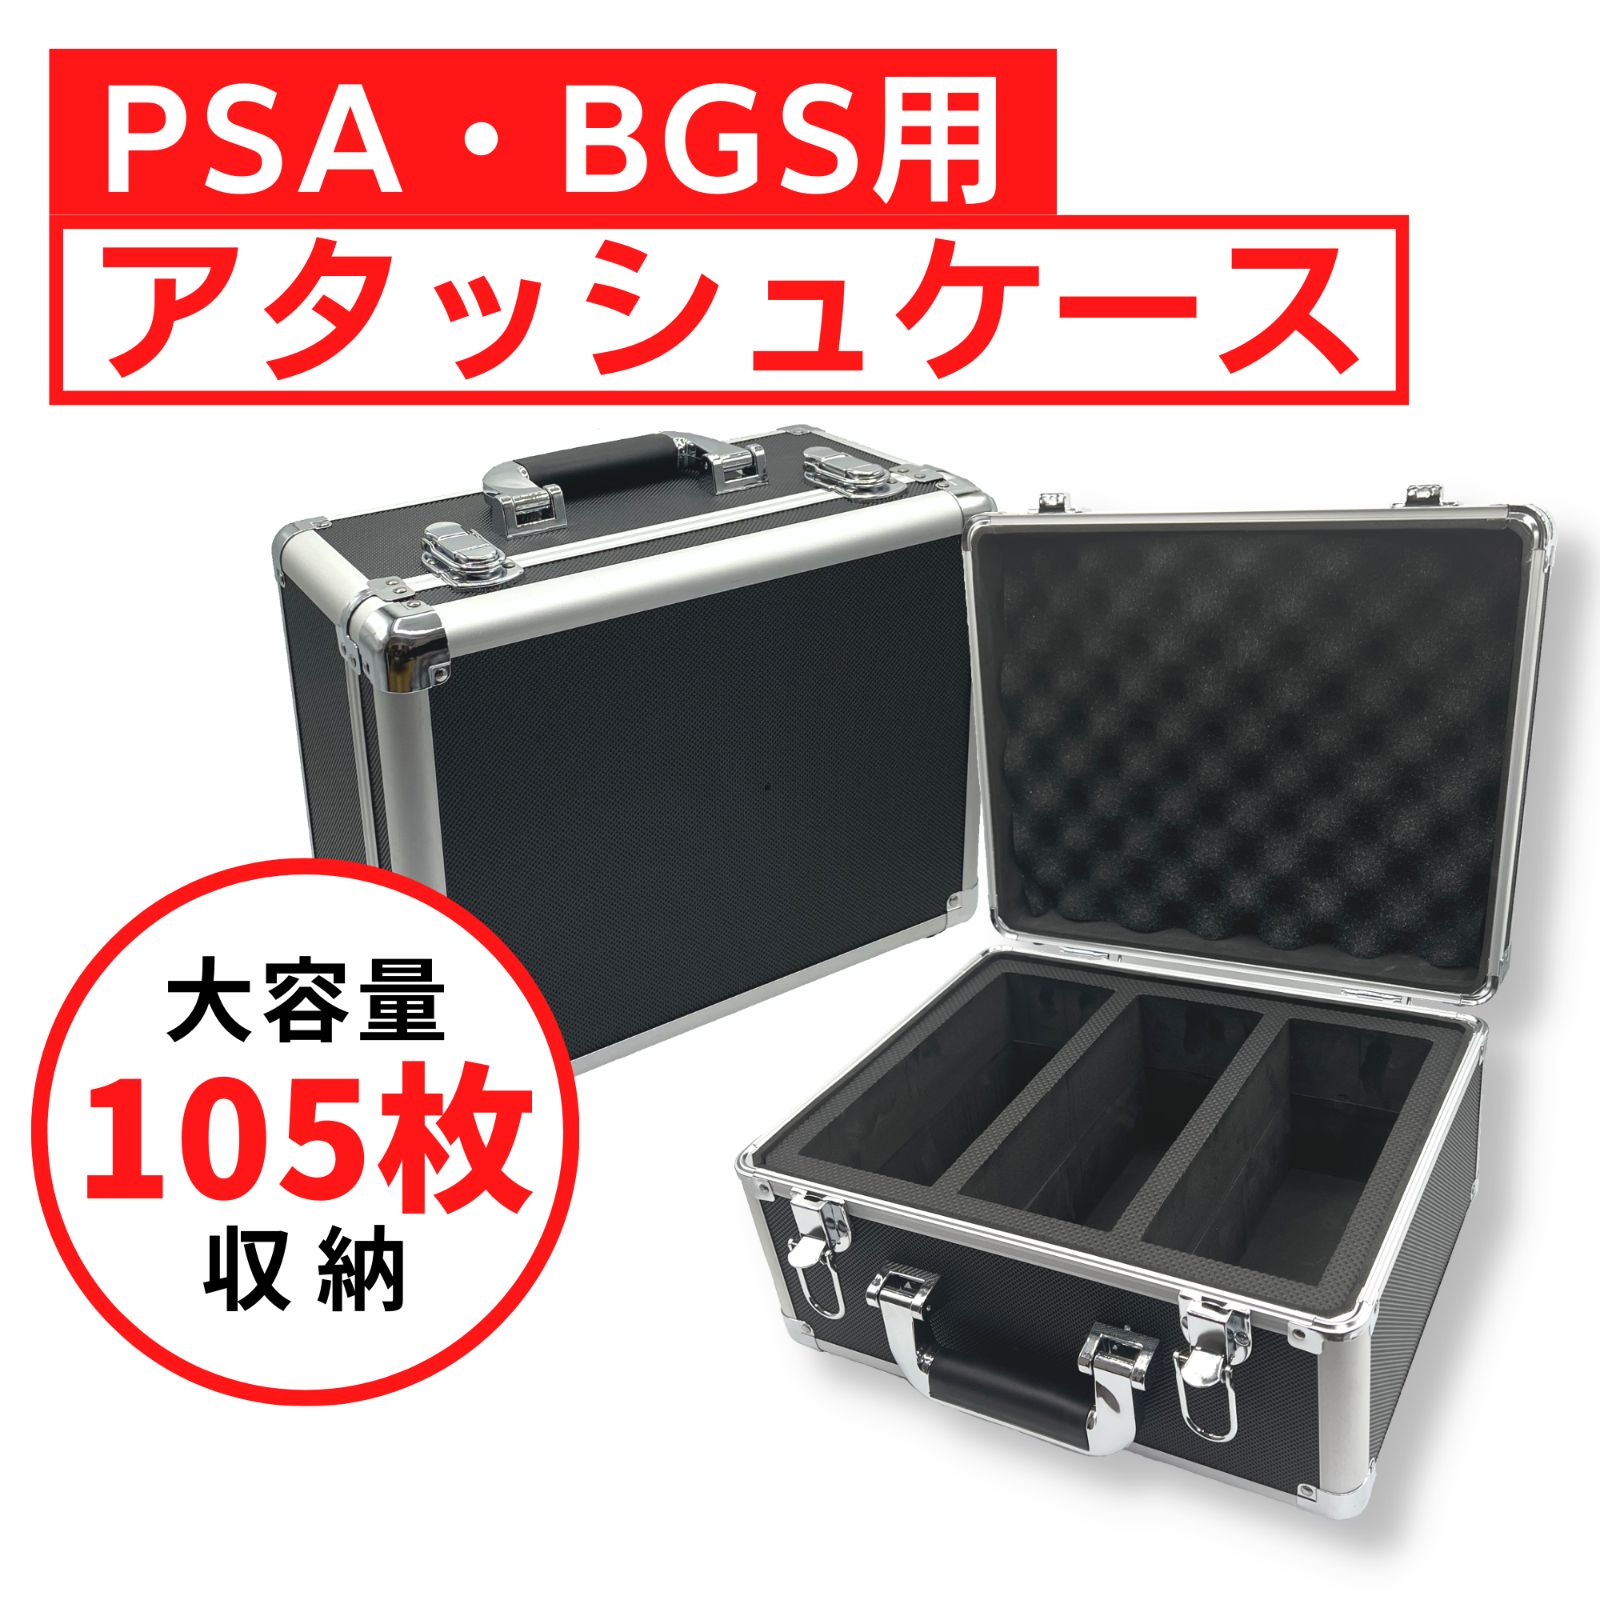 PSA BGS 保管用 アタッシュケース 105枚収納 ストレージボックス